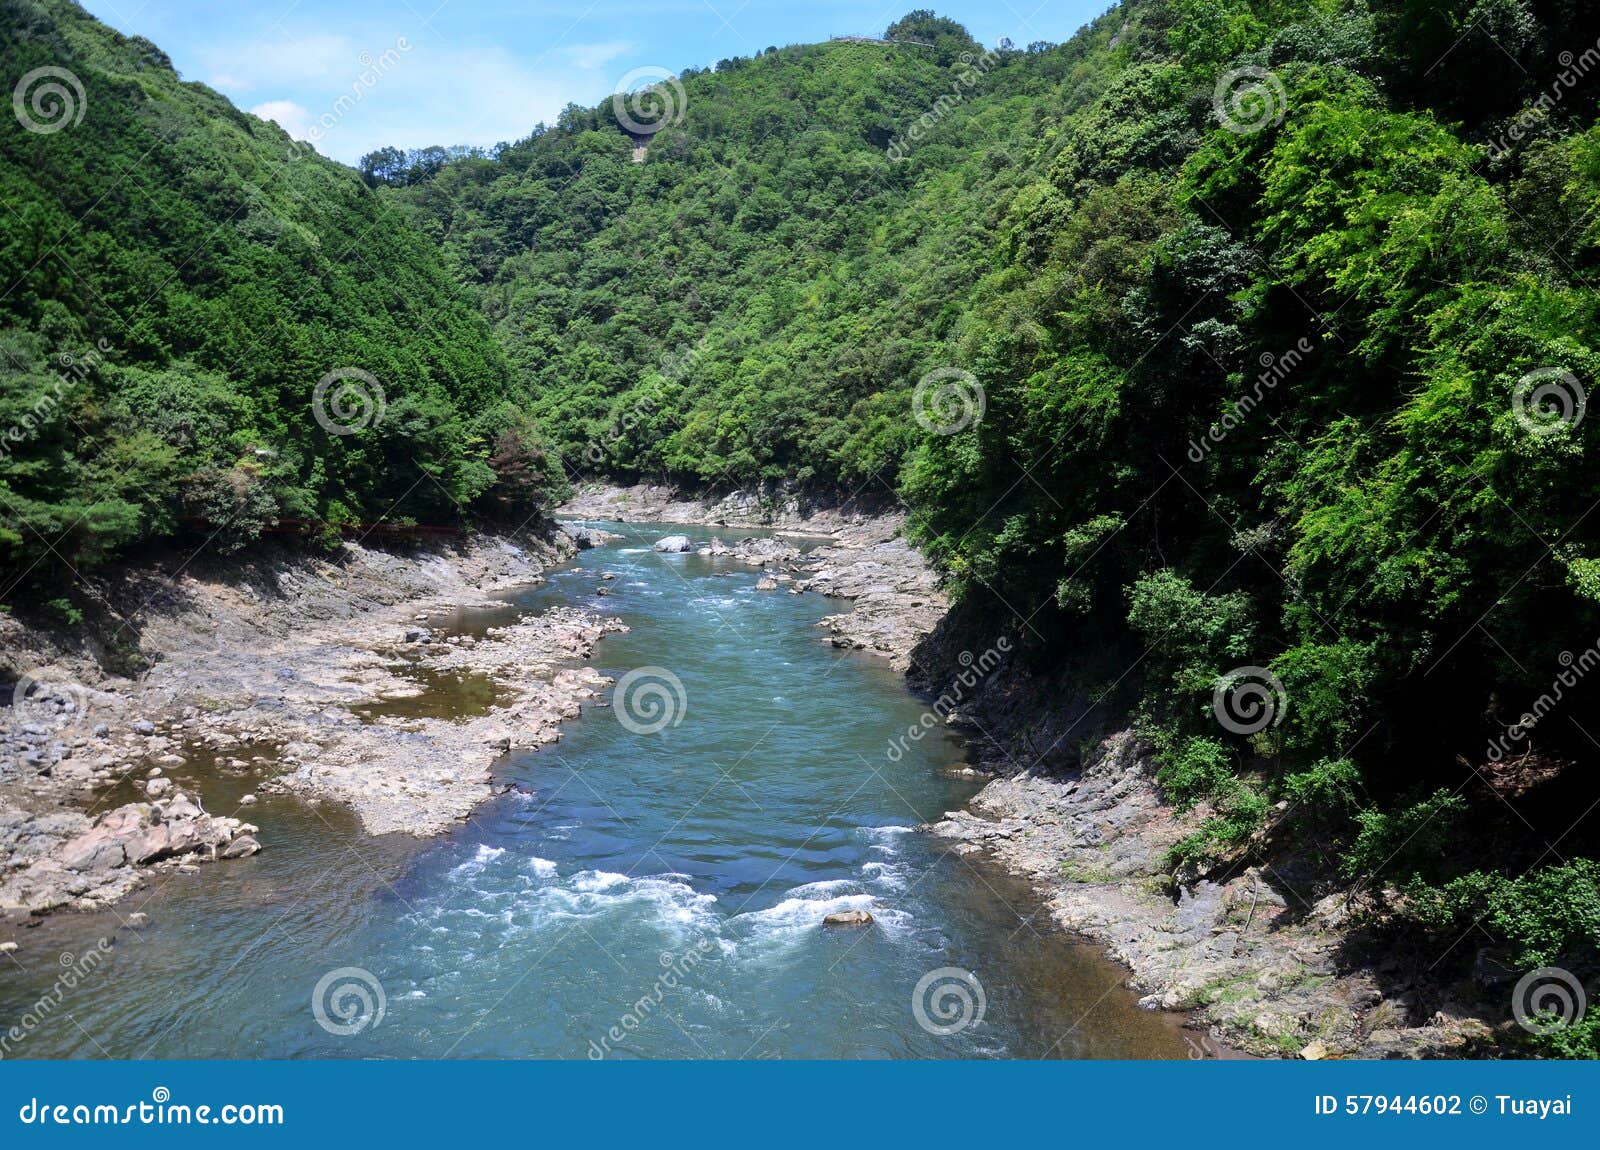 view of hozugawa river from sagano scenic railway